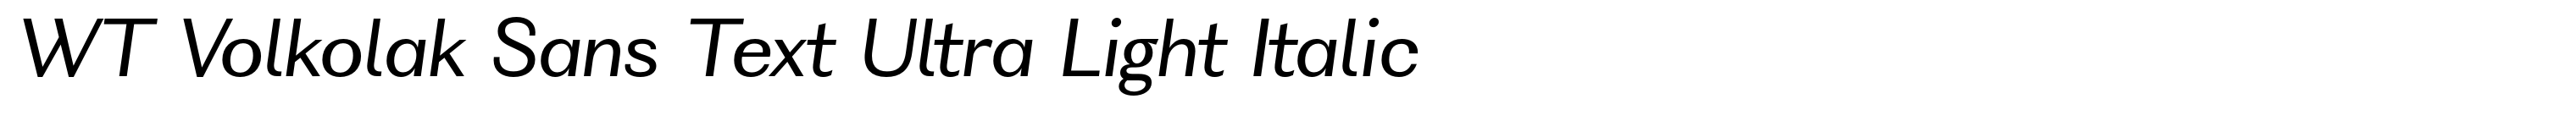 WT Volkolak Sans Text Ultra Light Italic